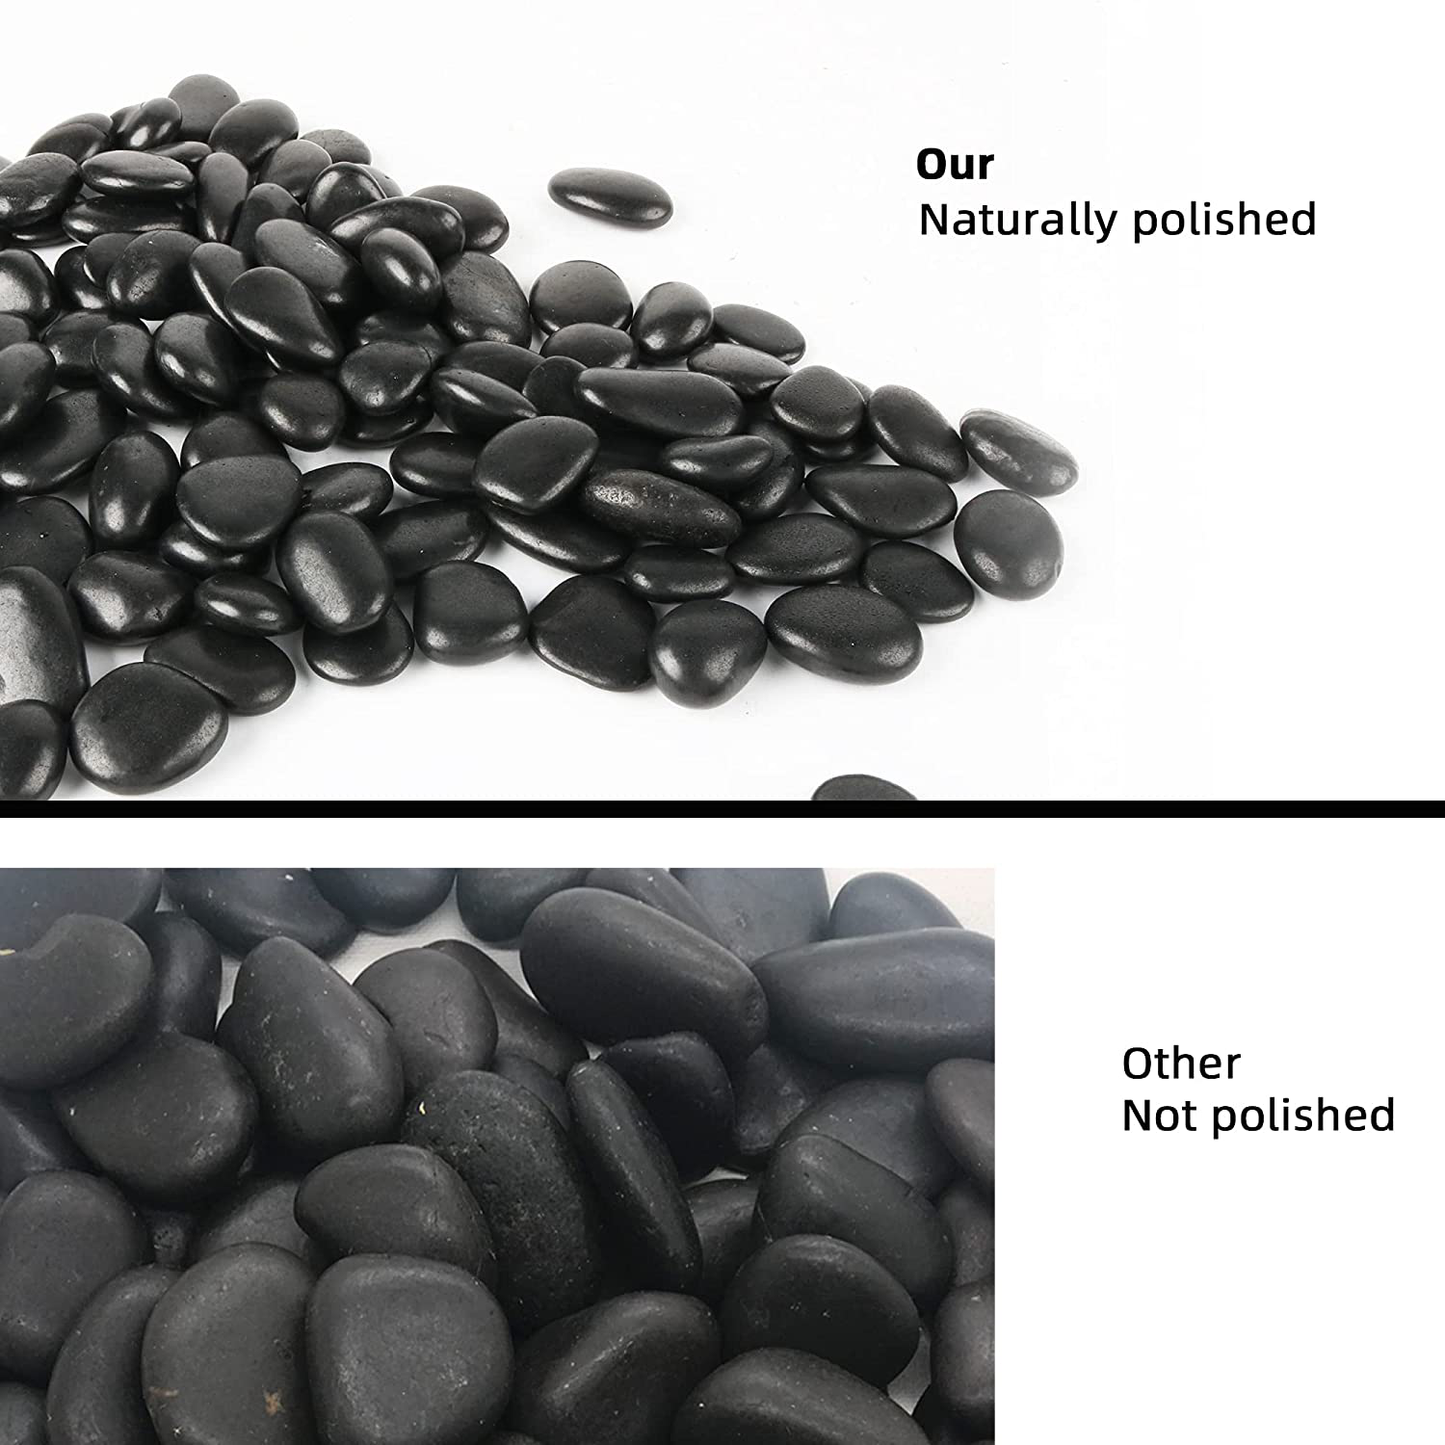 CJGQ Black Pebbles for Plants 3Lb Bulk Bag 1"- 1.5" Aquarium Gravel Decorative Polished Stone Natural River Rocks for Fish Tank…